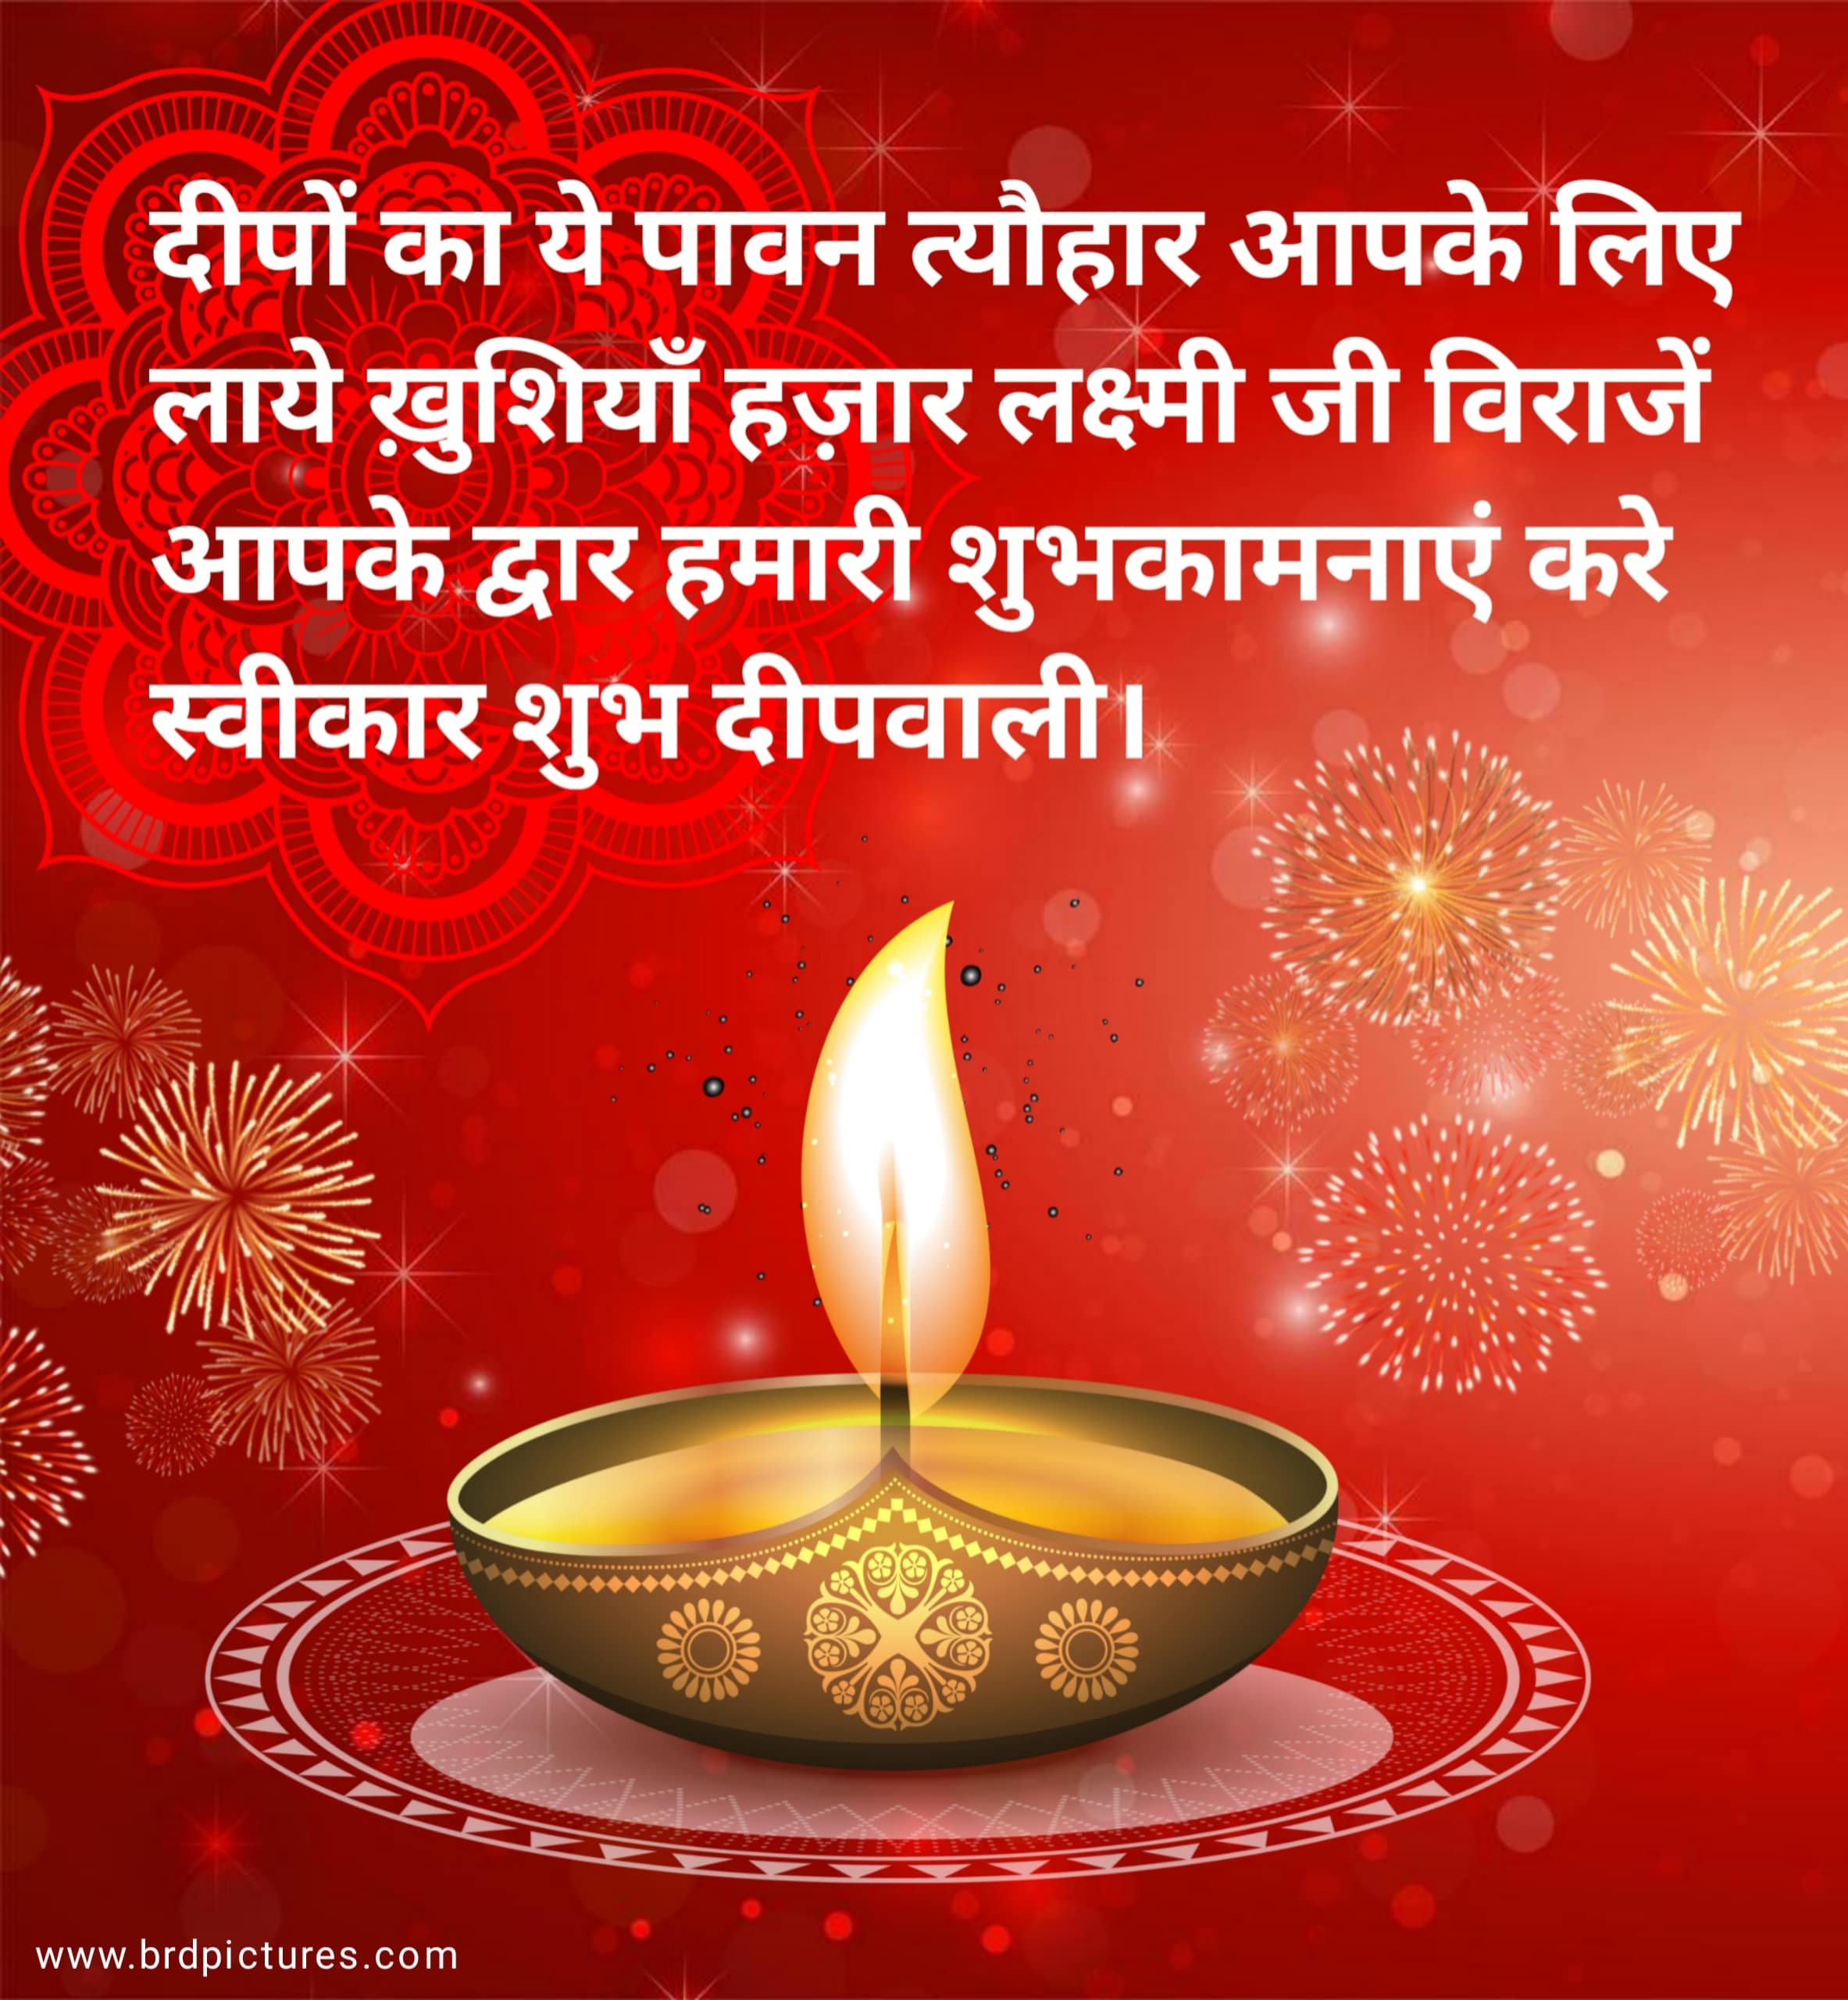 Download Free Diwali Wishes Image 2023